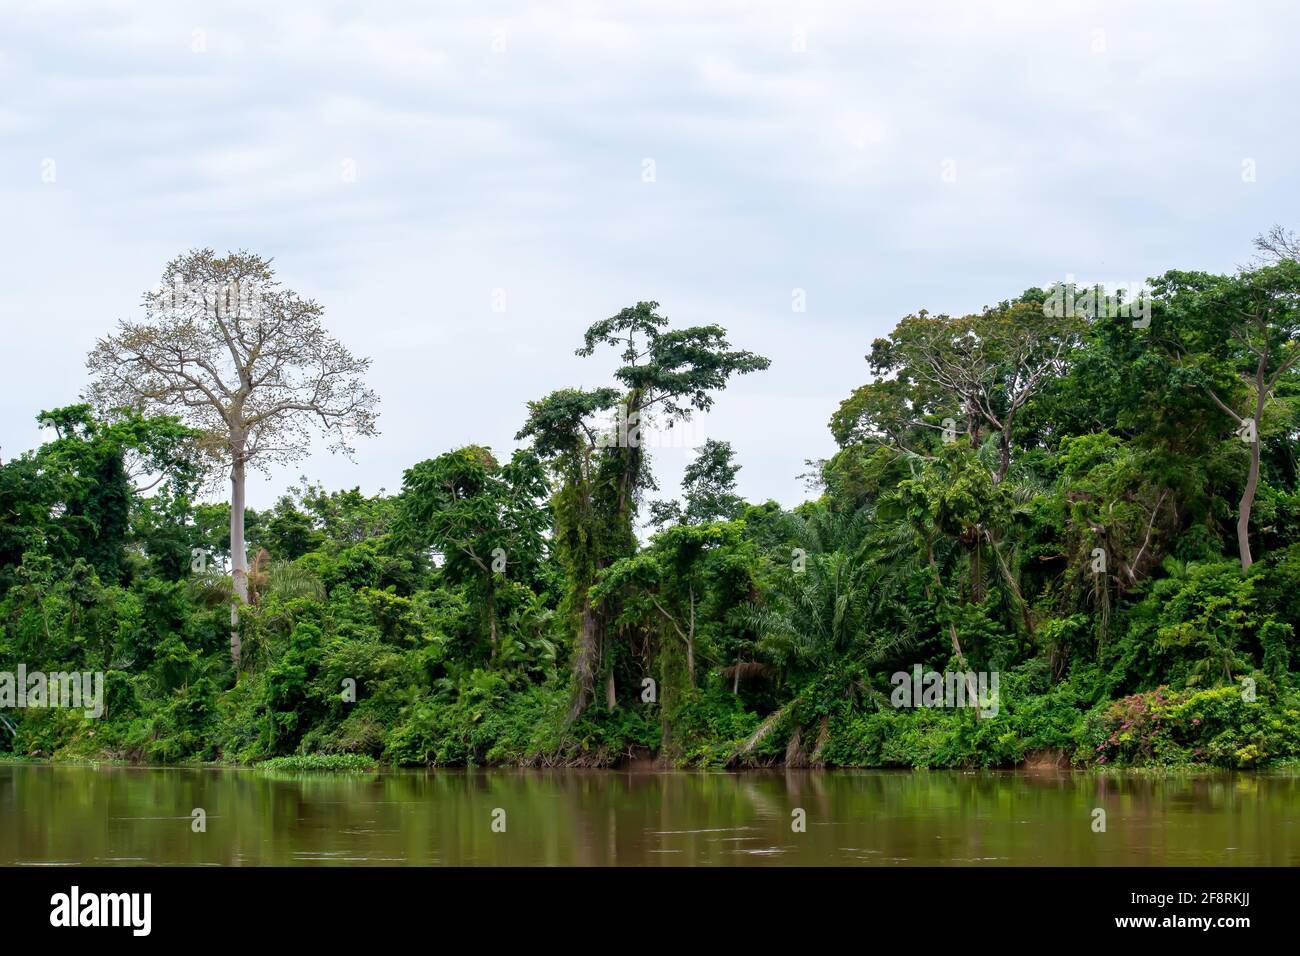 Der Regenwald im Kongo-Becken, der zweitgrößte Regenwald der Welt. Demokratische Republik Kongo, Zentralafrika. Stockfoto